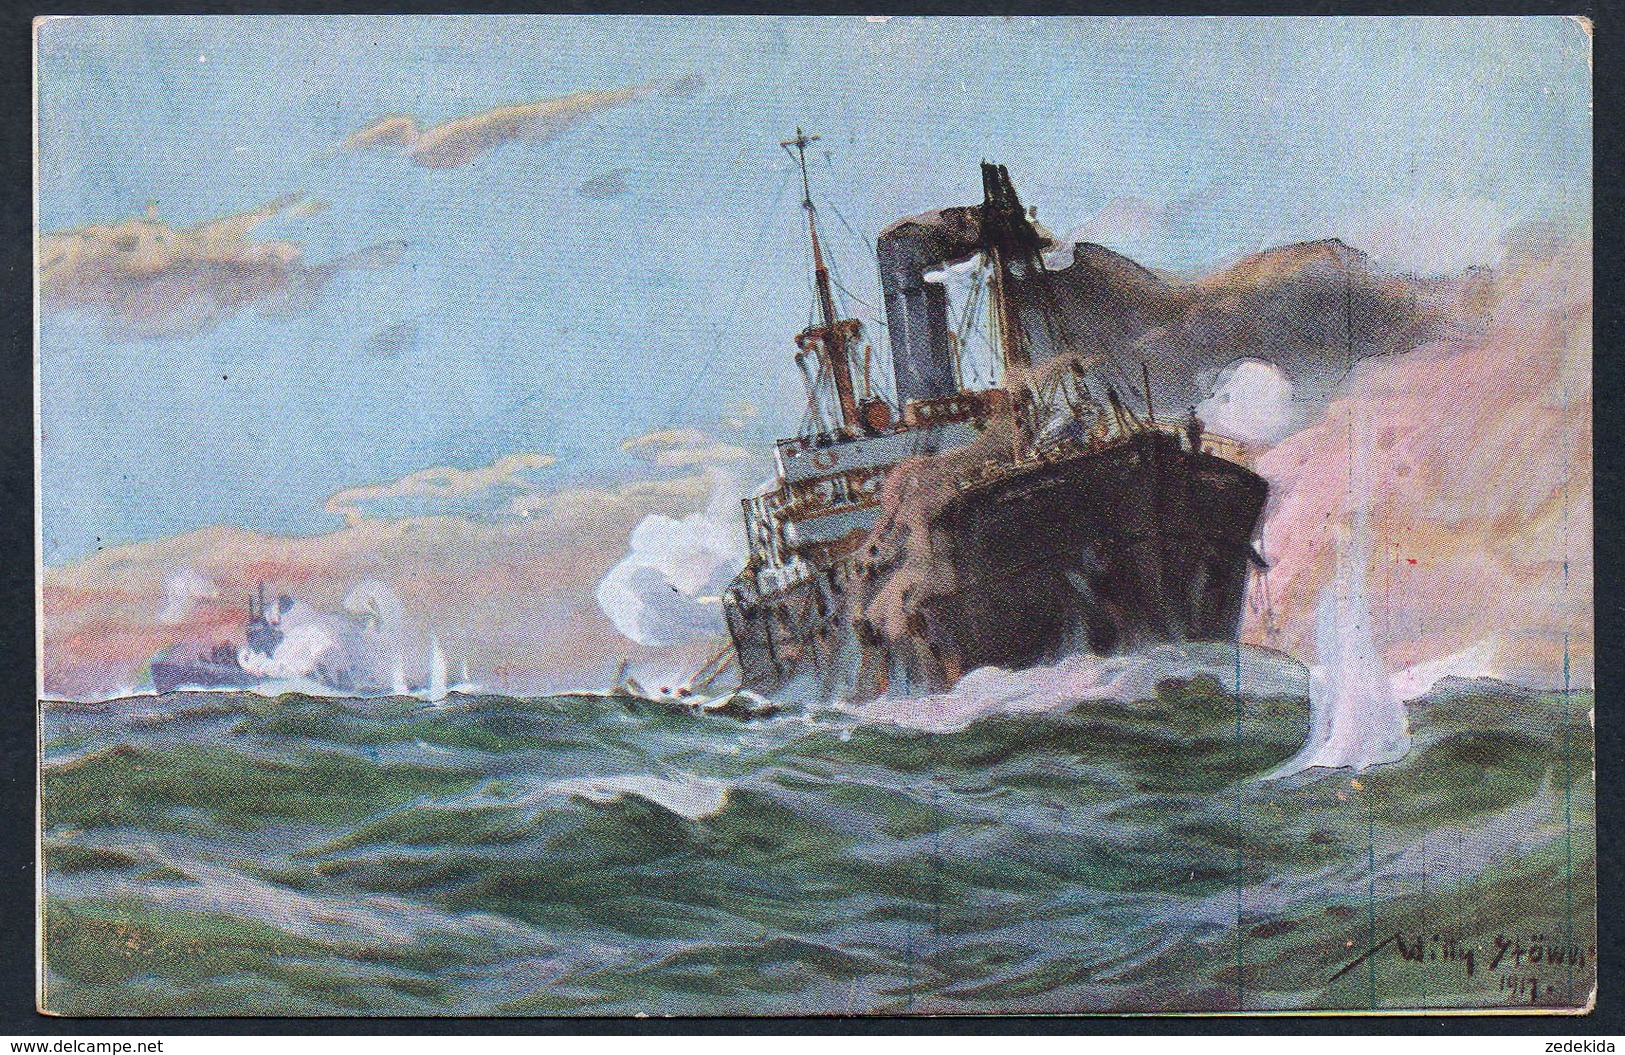 6470 - Alte Künstlerkarte - Gemälde Willy Stöwer - U Boot Spende 1917 - 1. WK WW - Dampfer - J.J. Weber - Stöwer, Willy